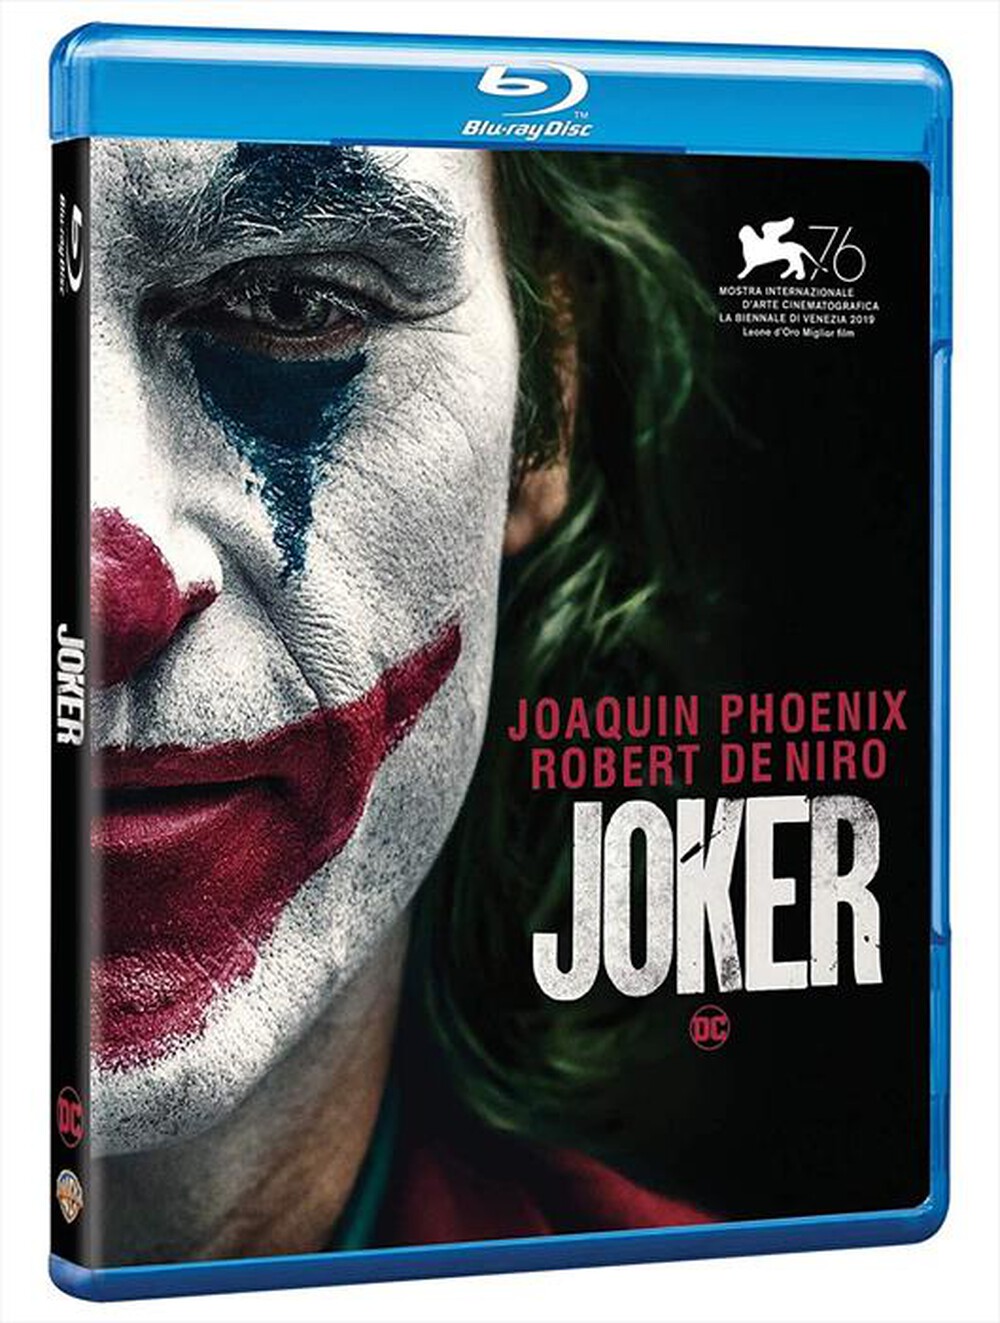 "WARNER HOME VIDEO - Joker"